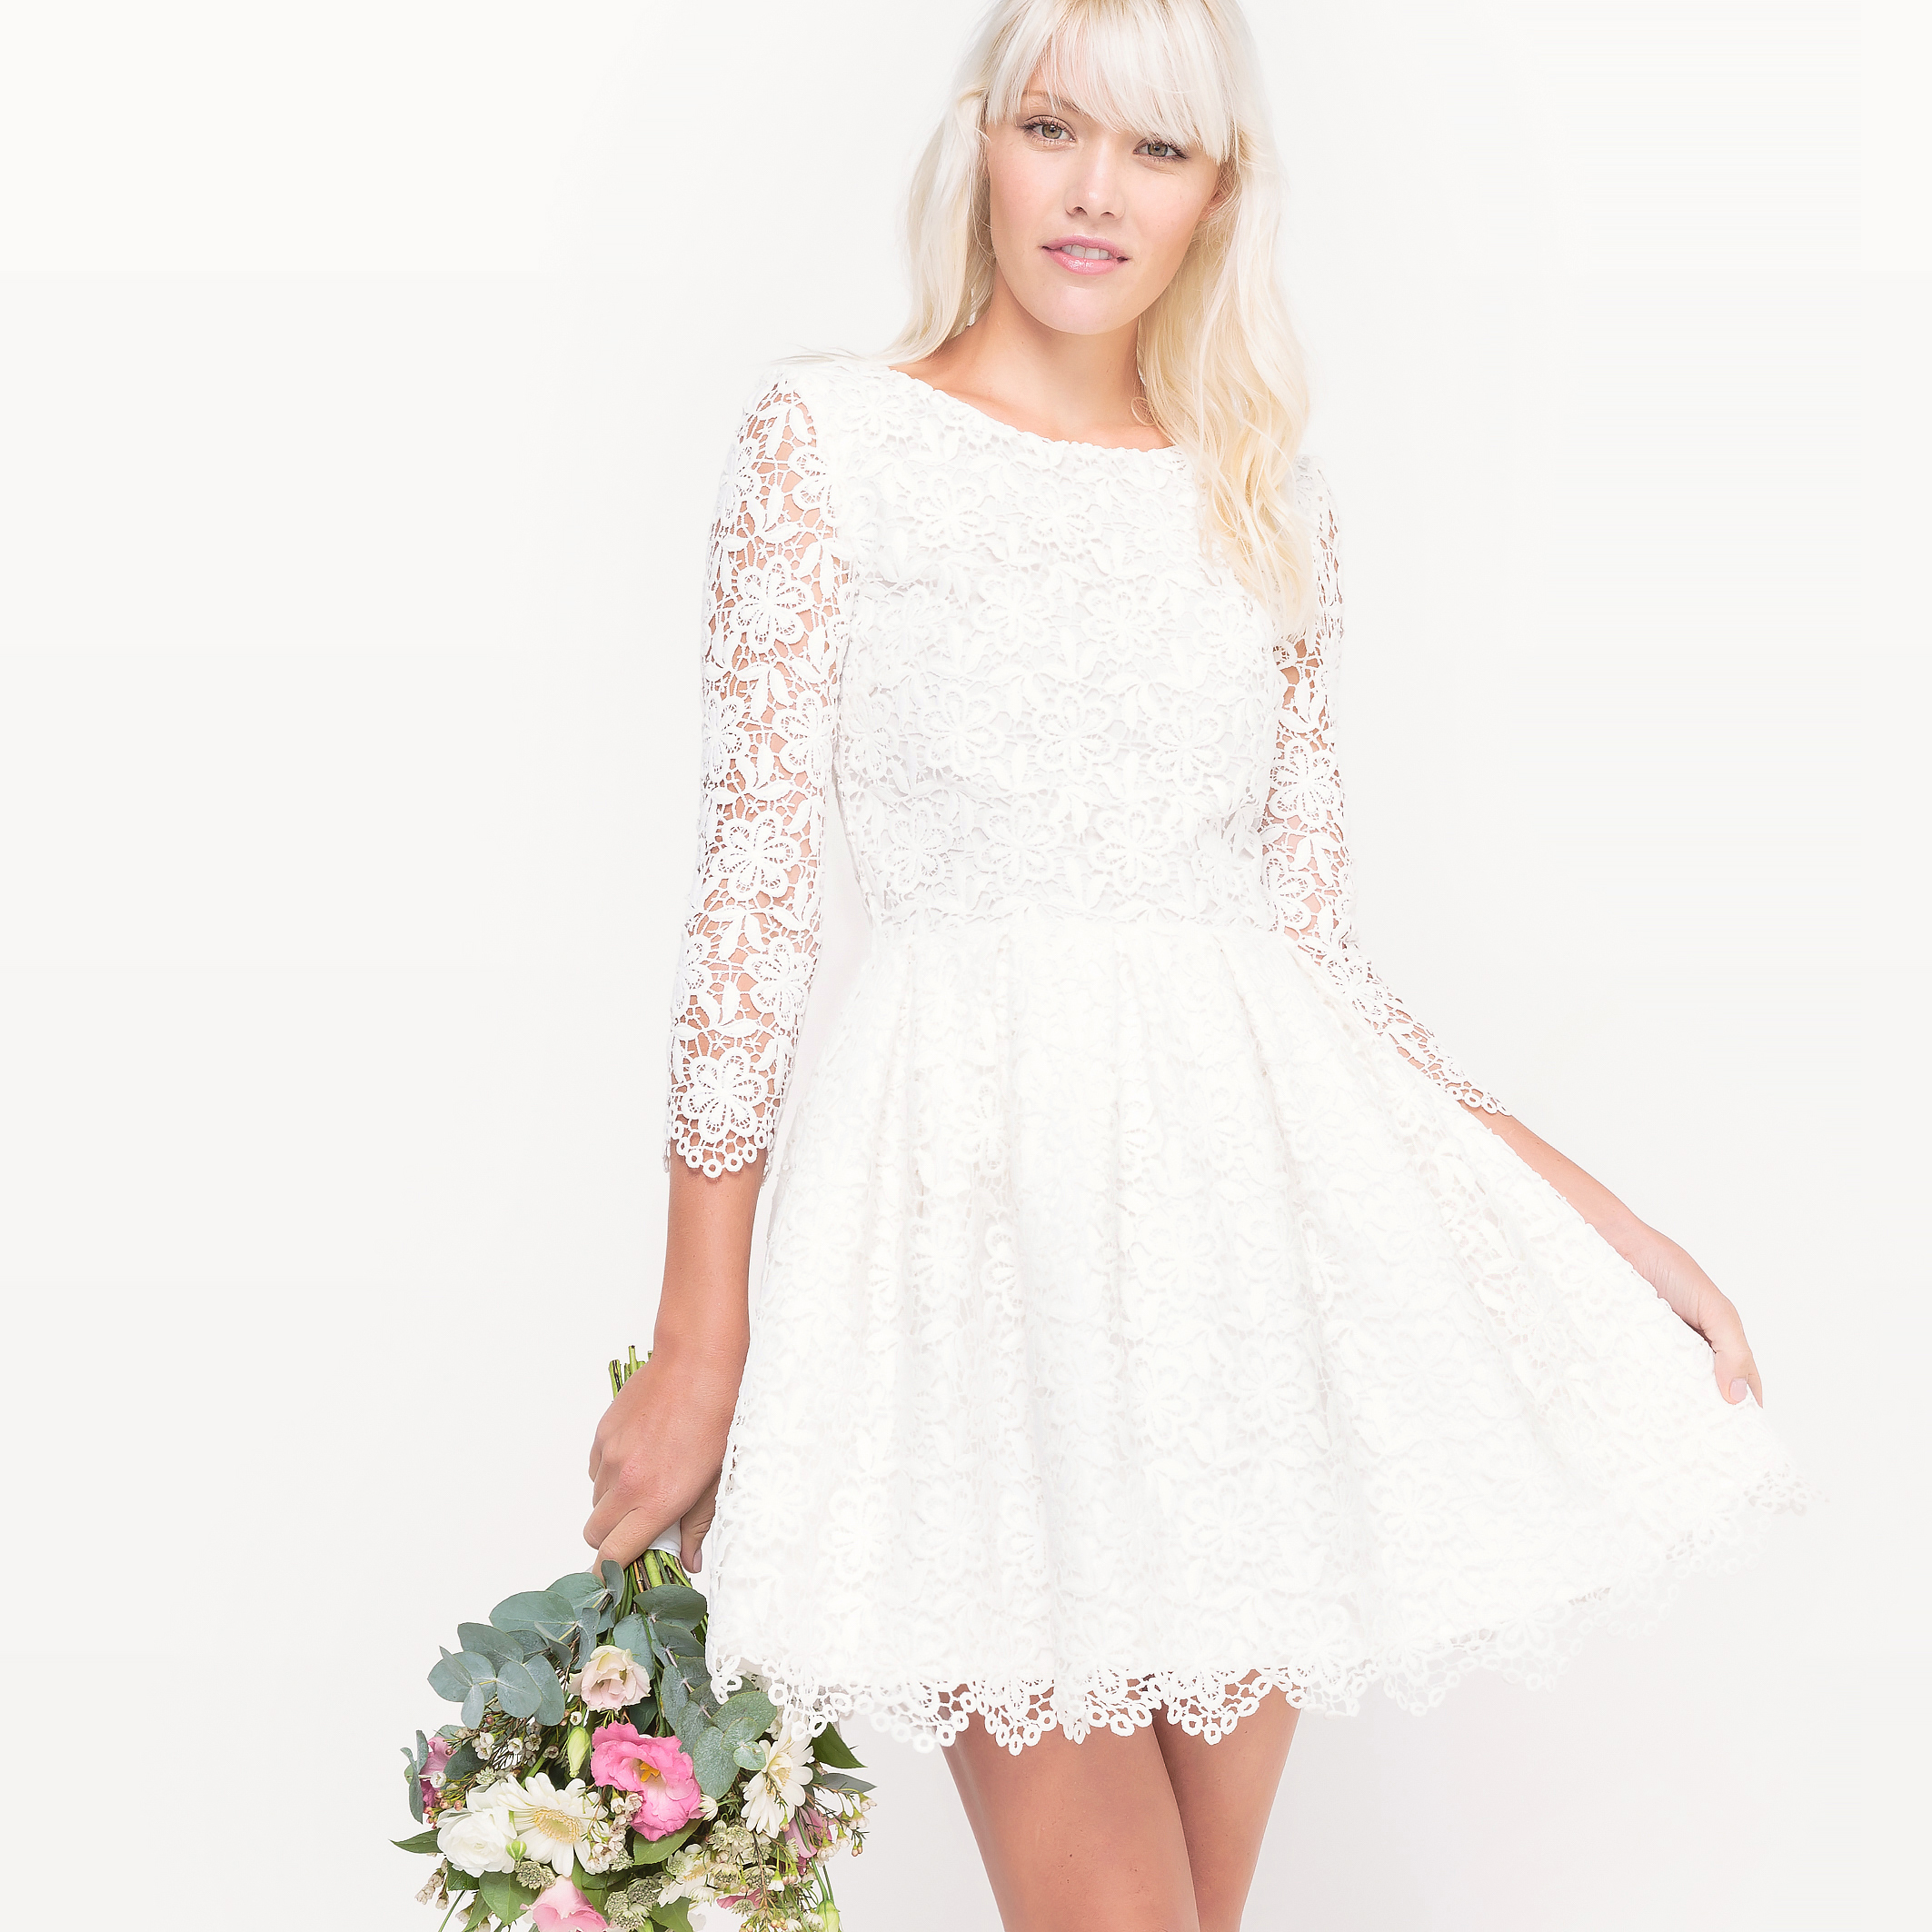 Белое Платье Короткое На Свадьбу Купить